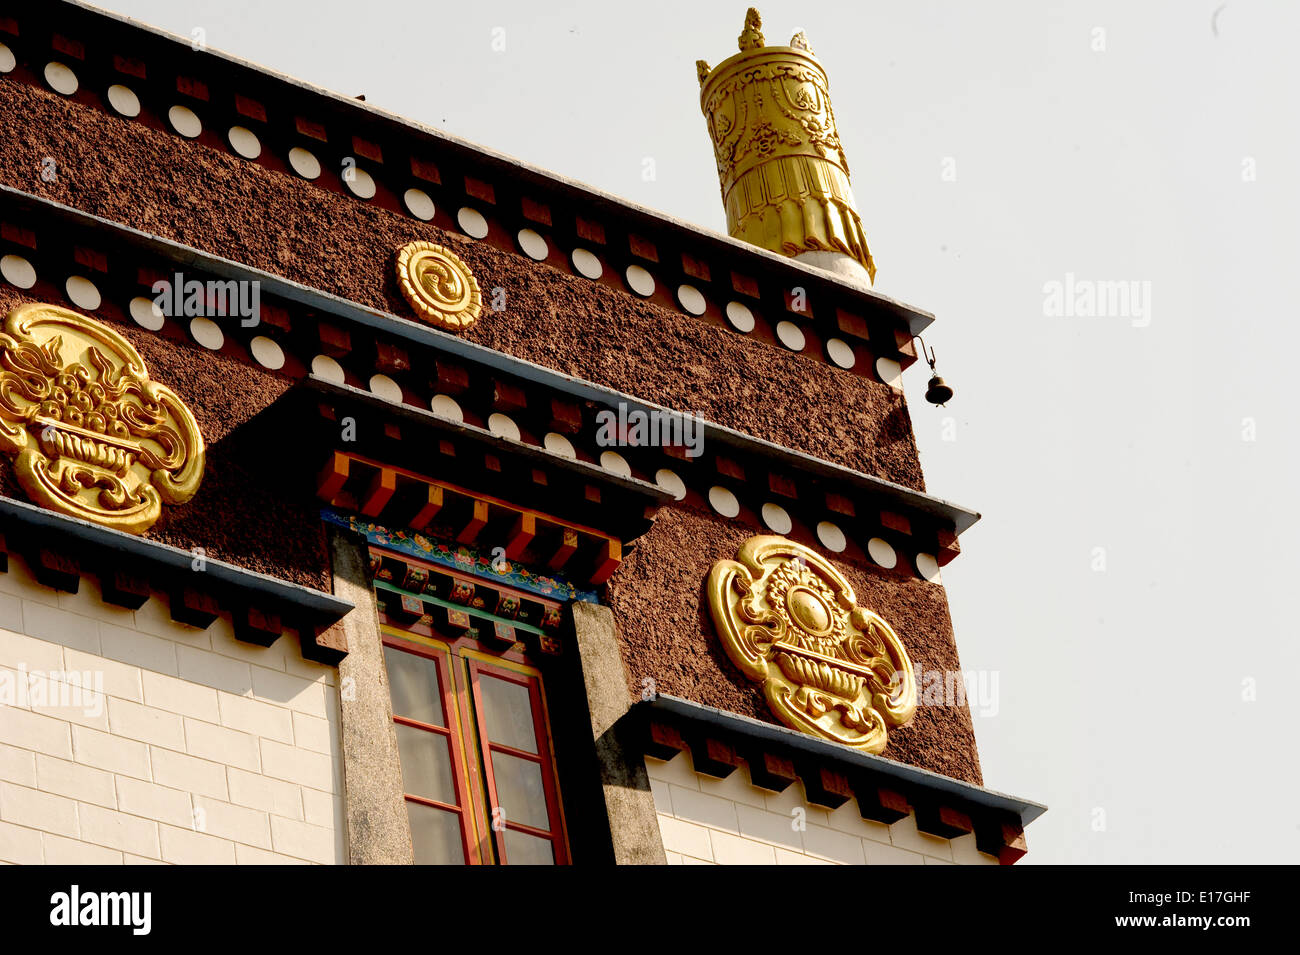 L'art dans l'architecture du monastère bouddhiste dans le Sikkim, Inde - Décoration de toit Banque D'Images